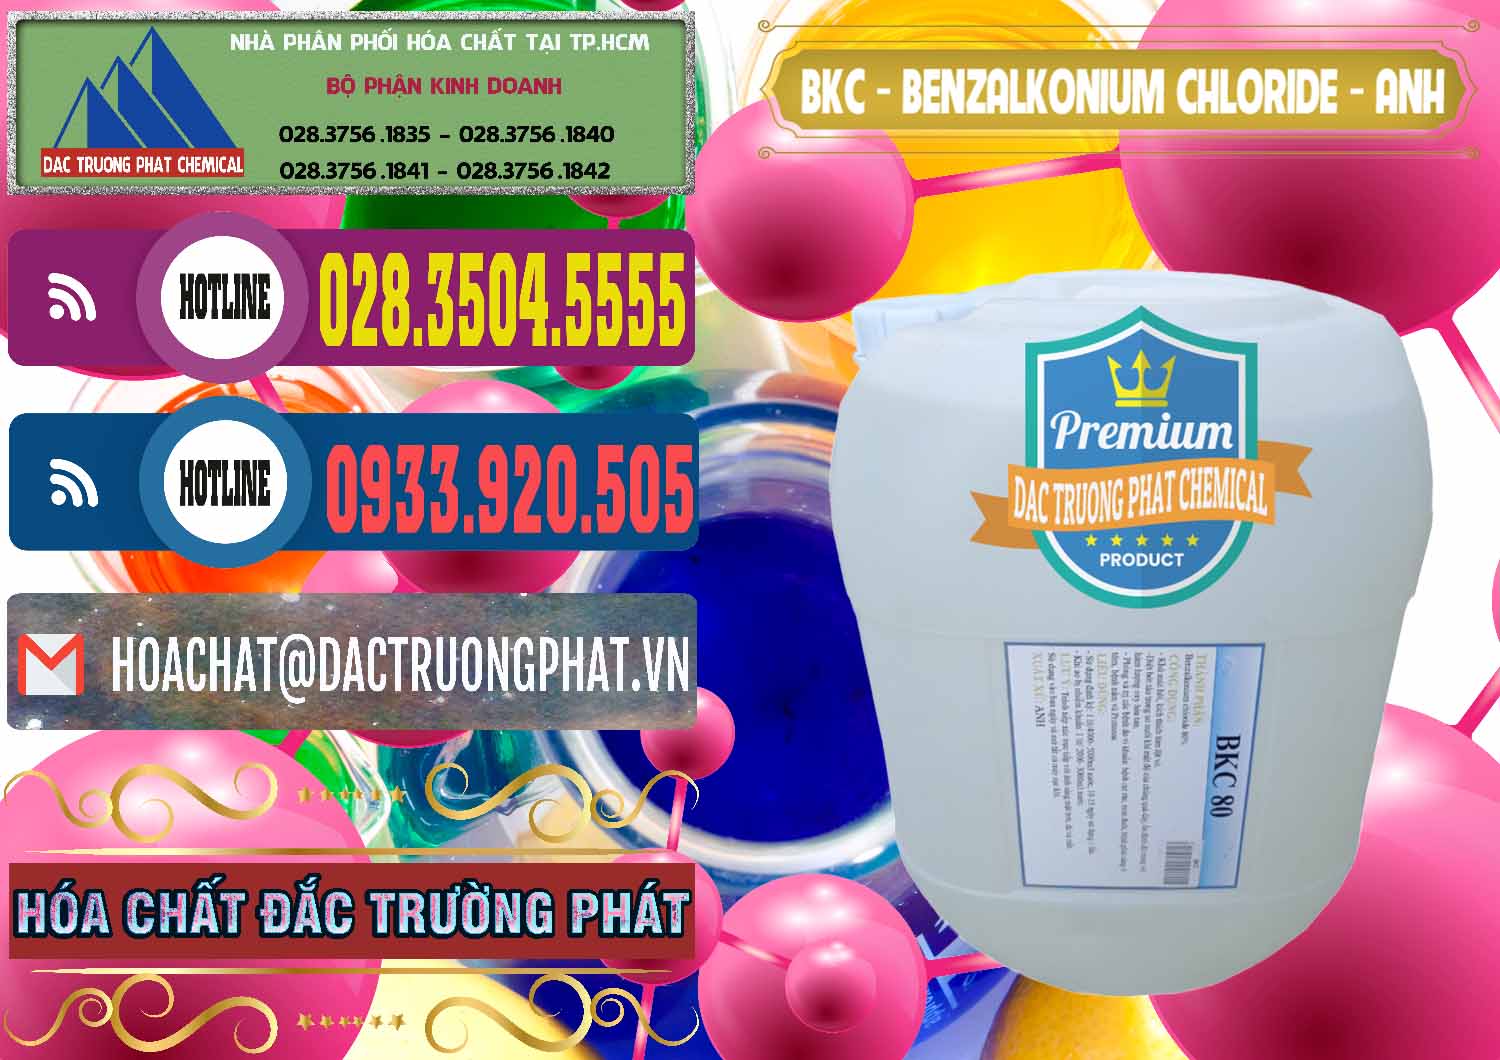 Nơi kinh doanh và bán BKC - Benzalkonium Chloride Anh Quốc Uk Kingdoms - 0415 - Công ty chuyên phân phối - nhập khẩu hóa chất tại TP.HCM - muabanhoachat.com.vn